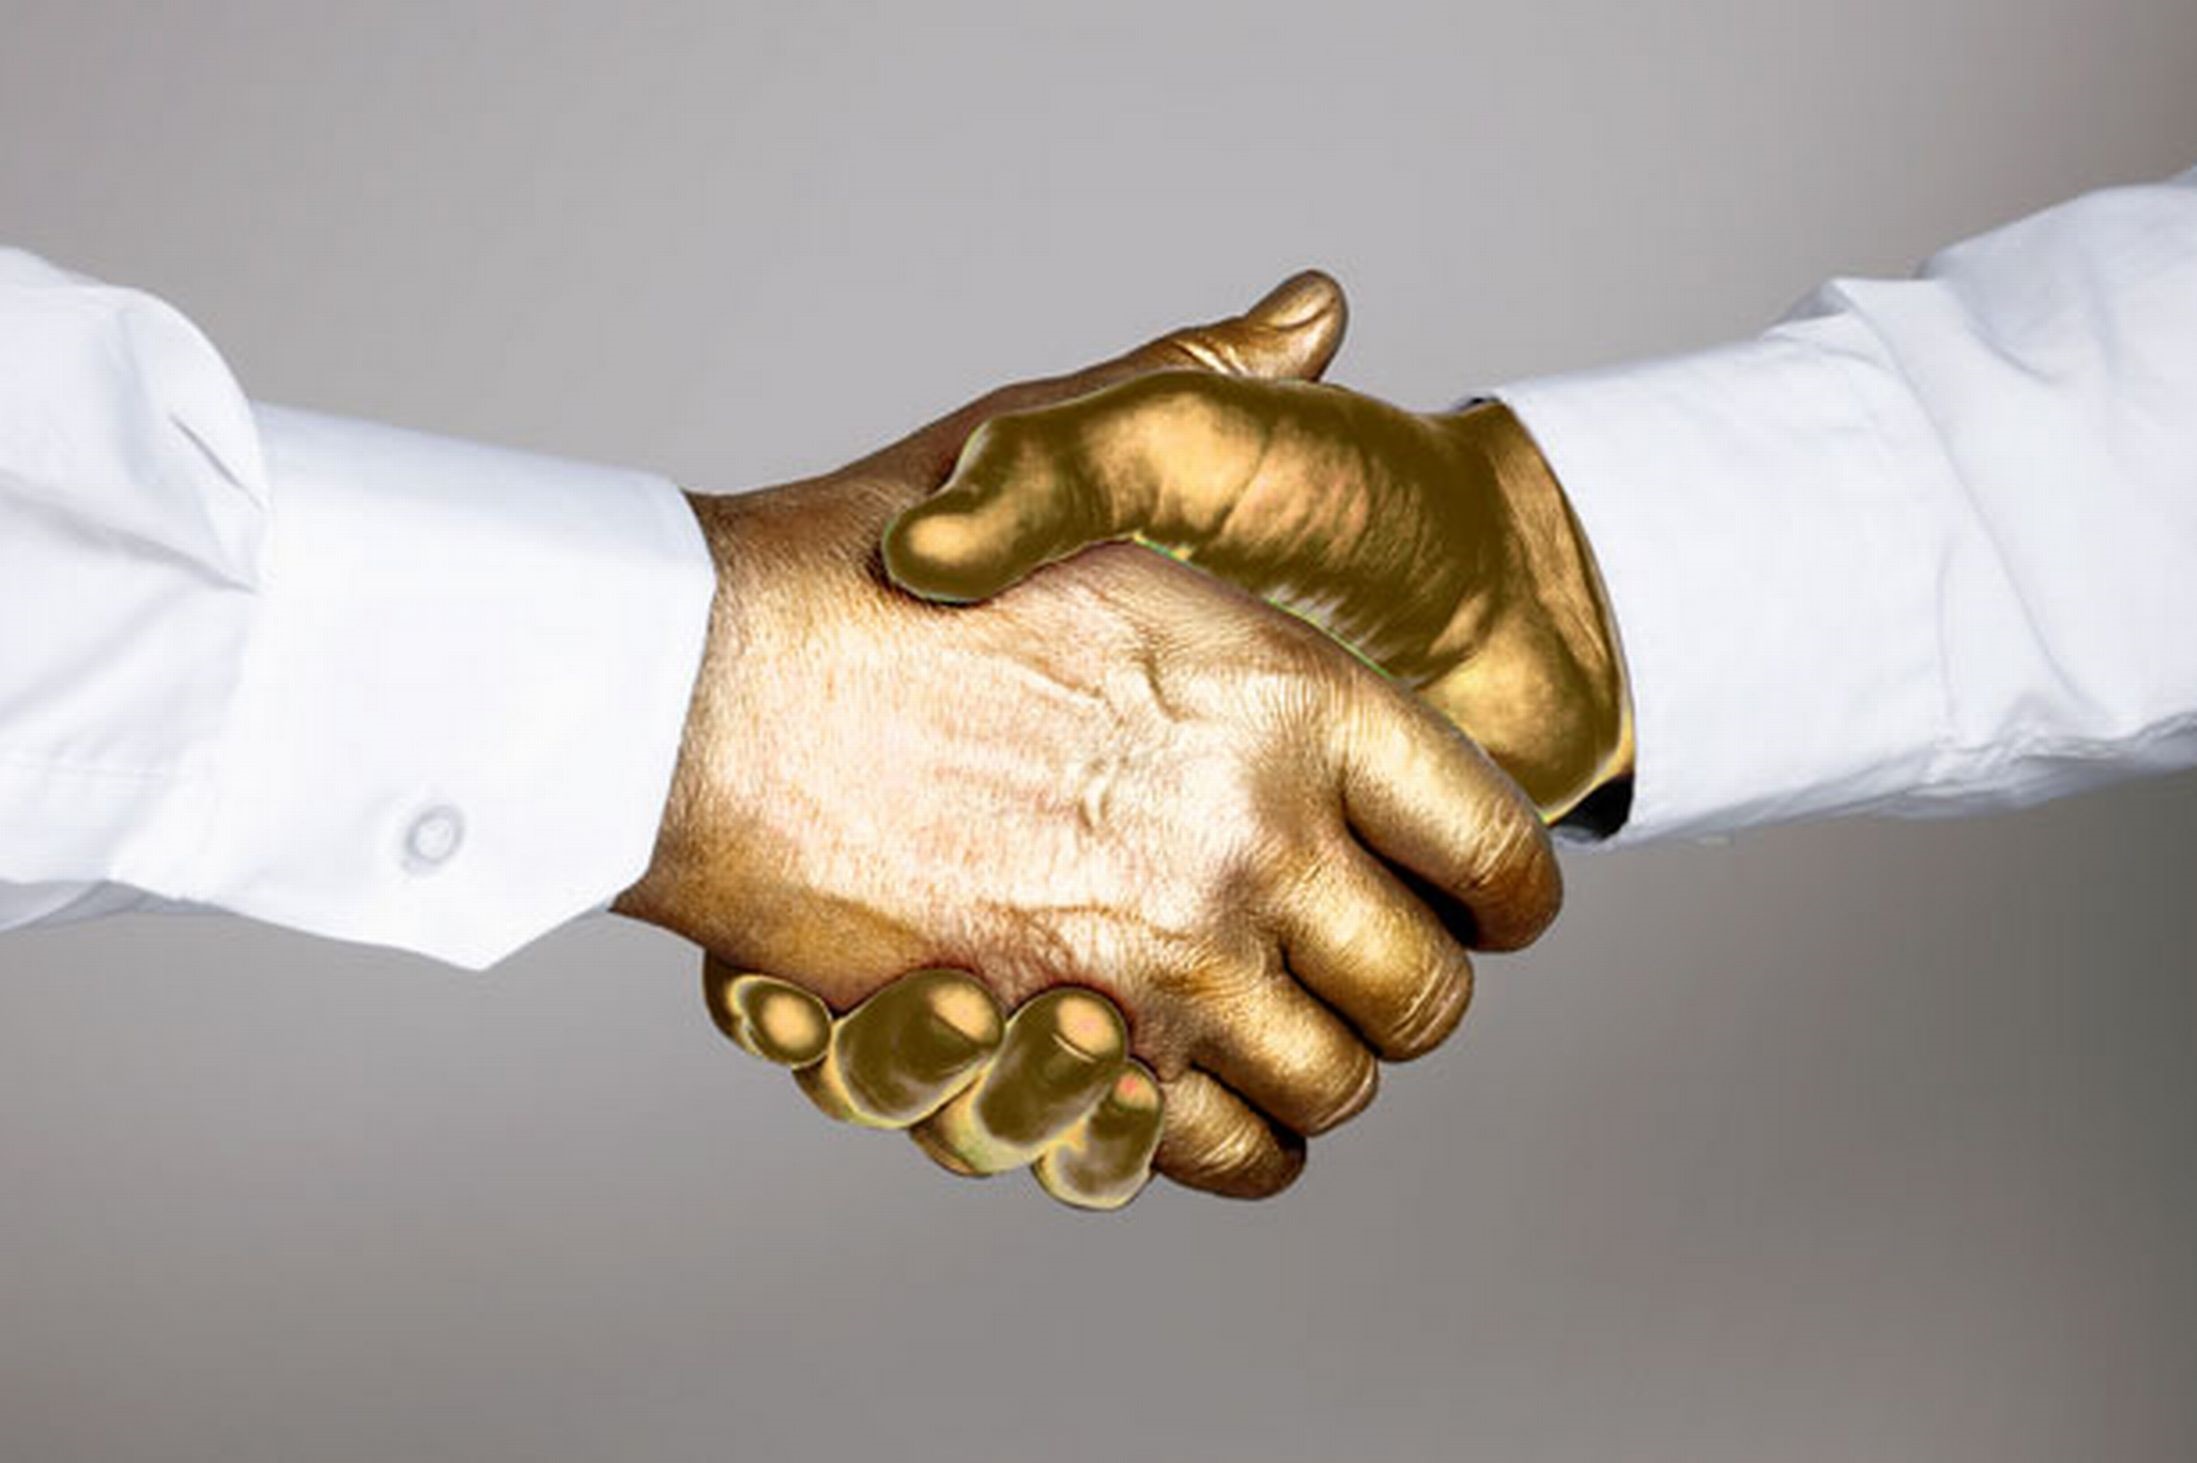 Another metro boss could get golden handshake | News24